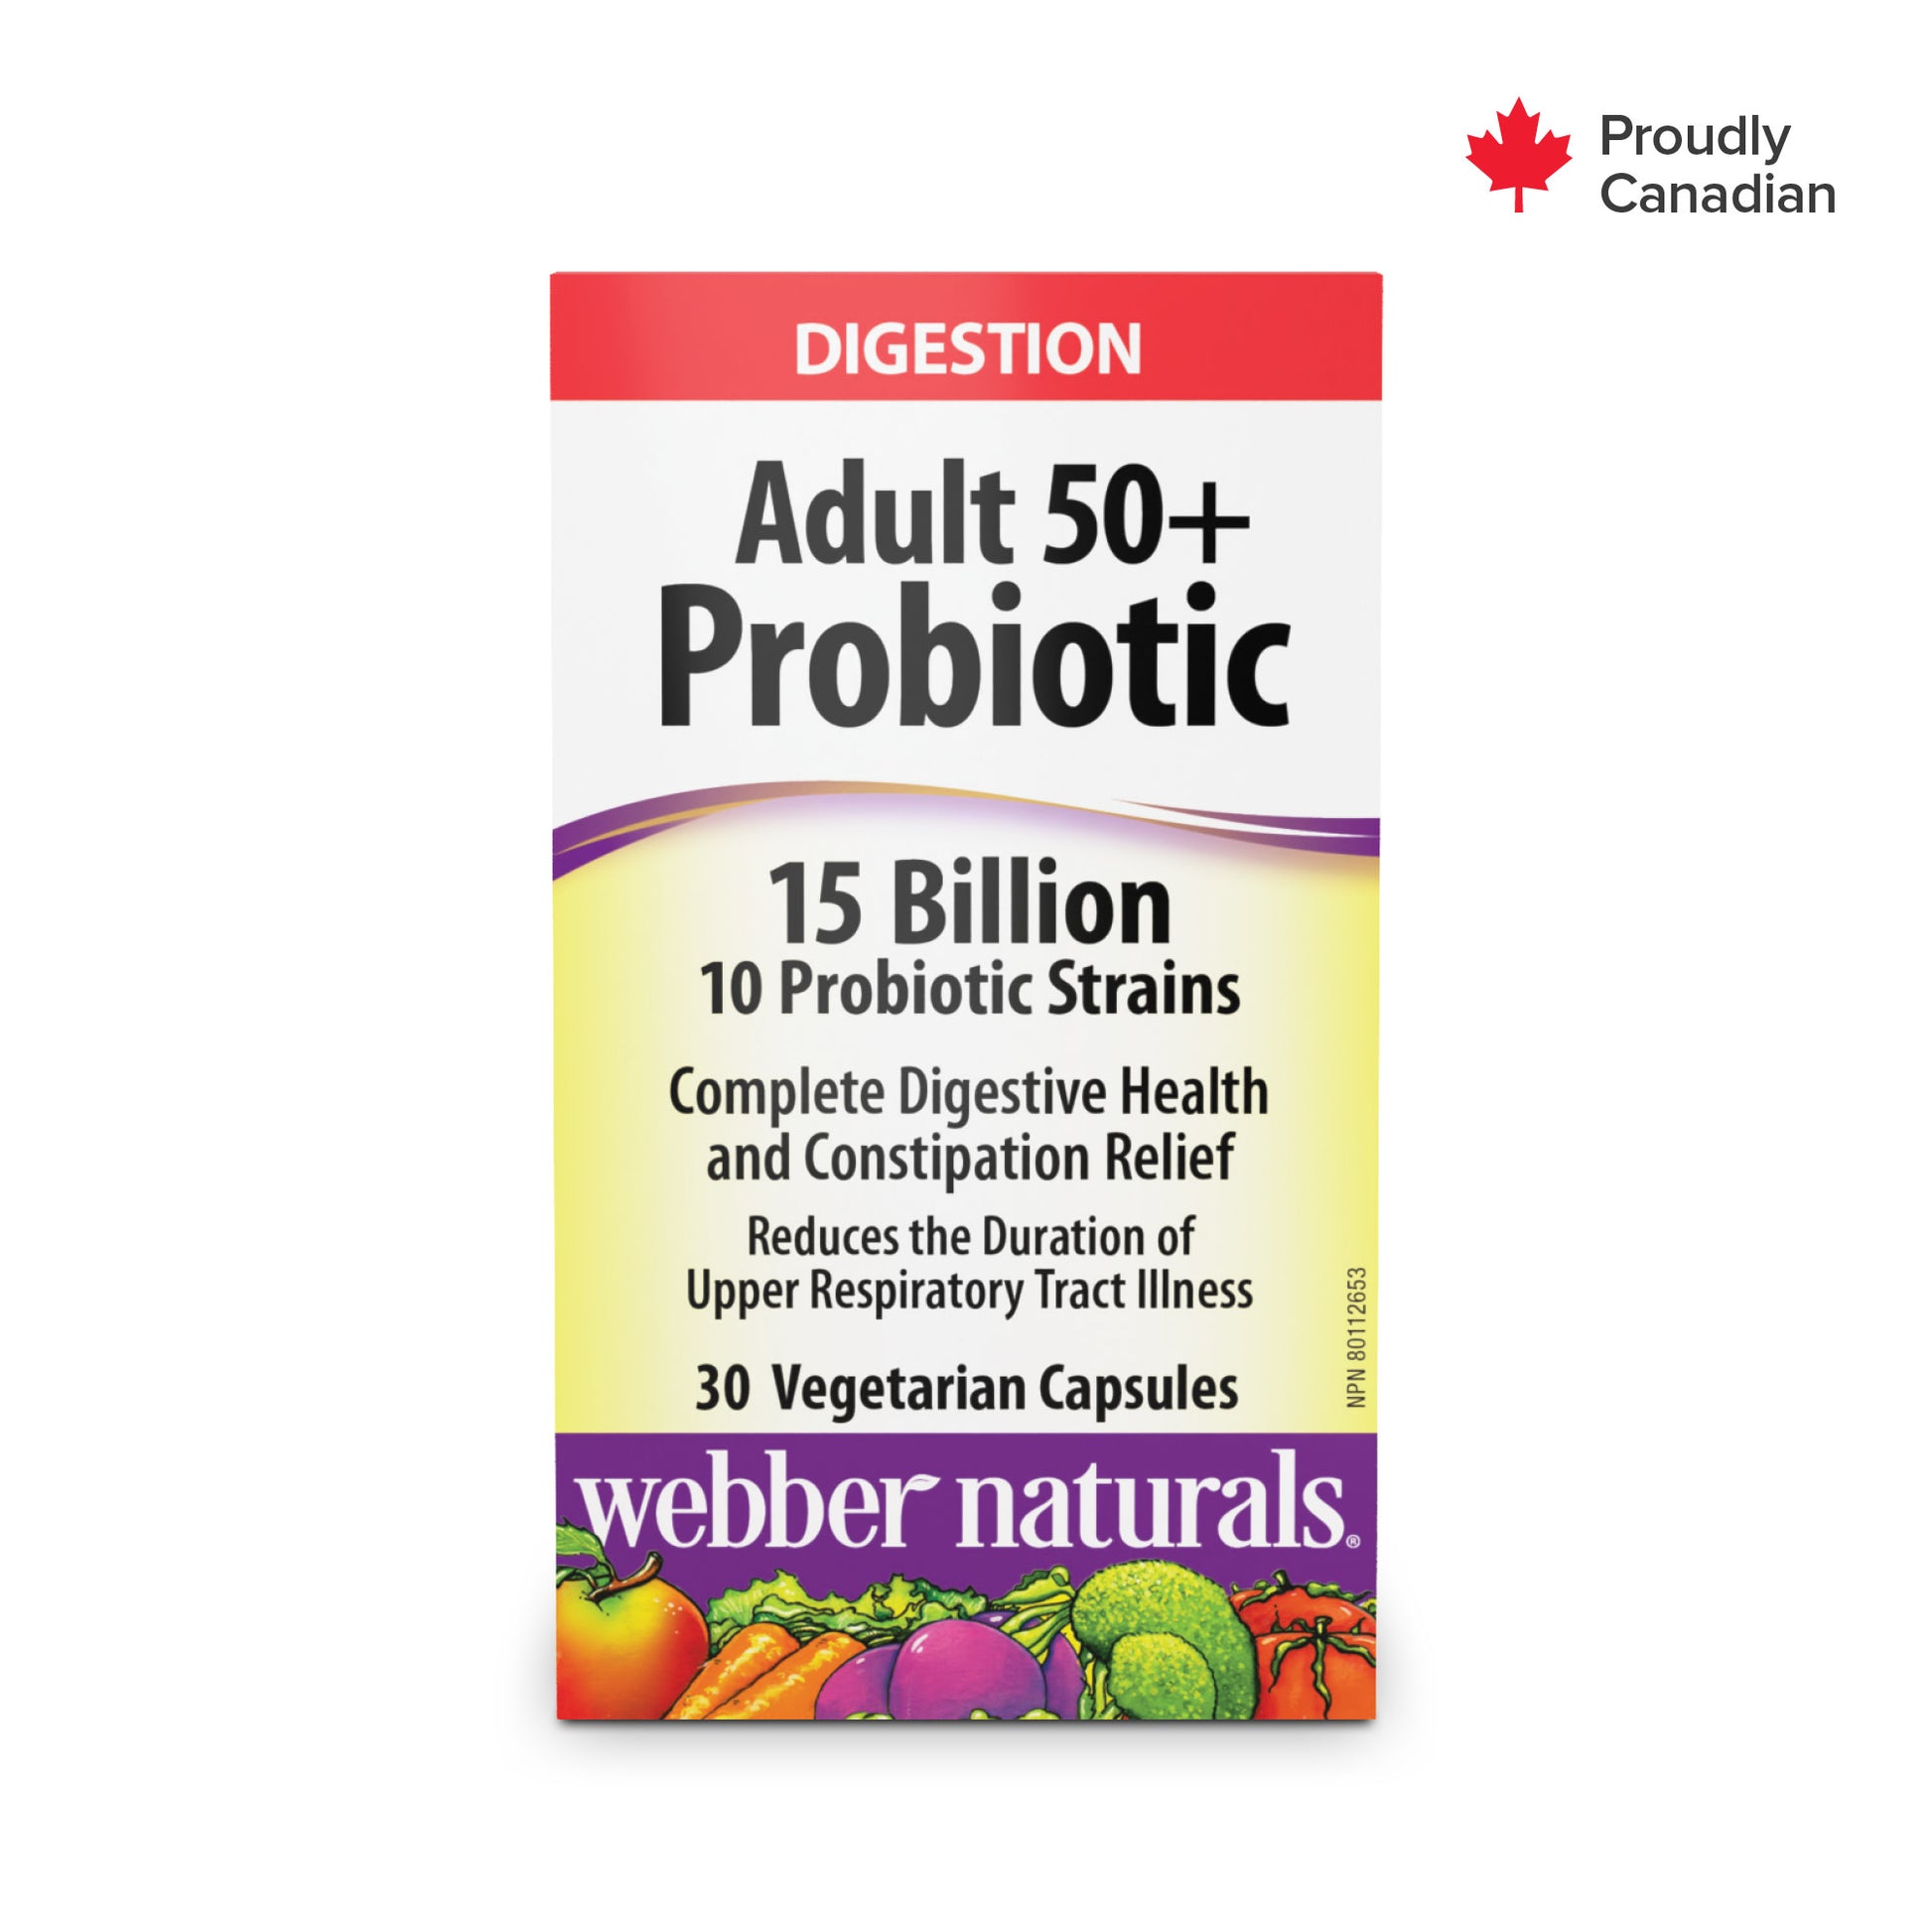 Probiotique Adultes 50+ 15 milliards for Webber Naturals|v|hi-res|WN3898